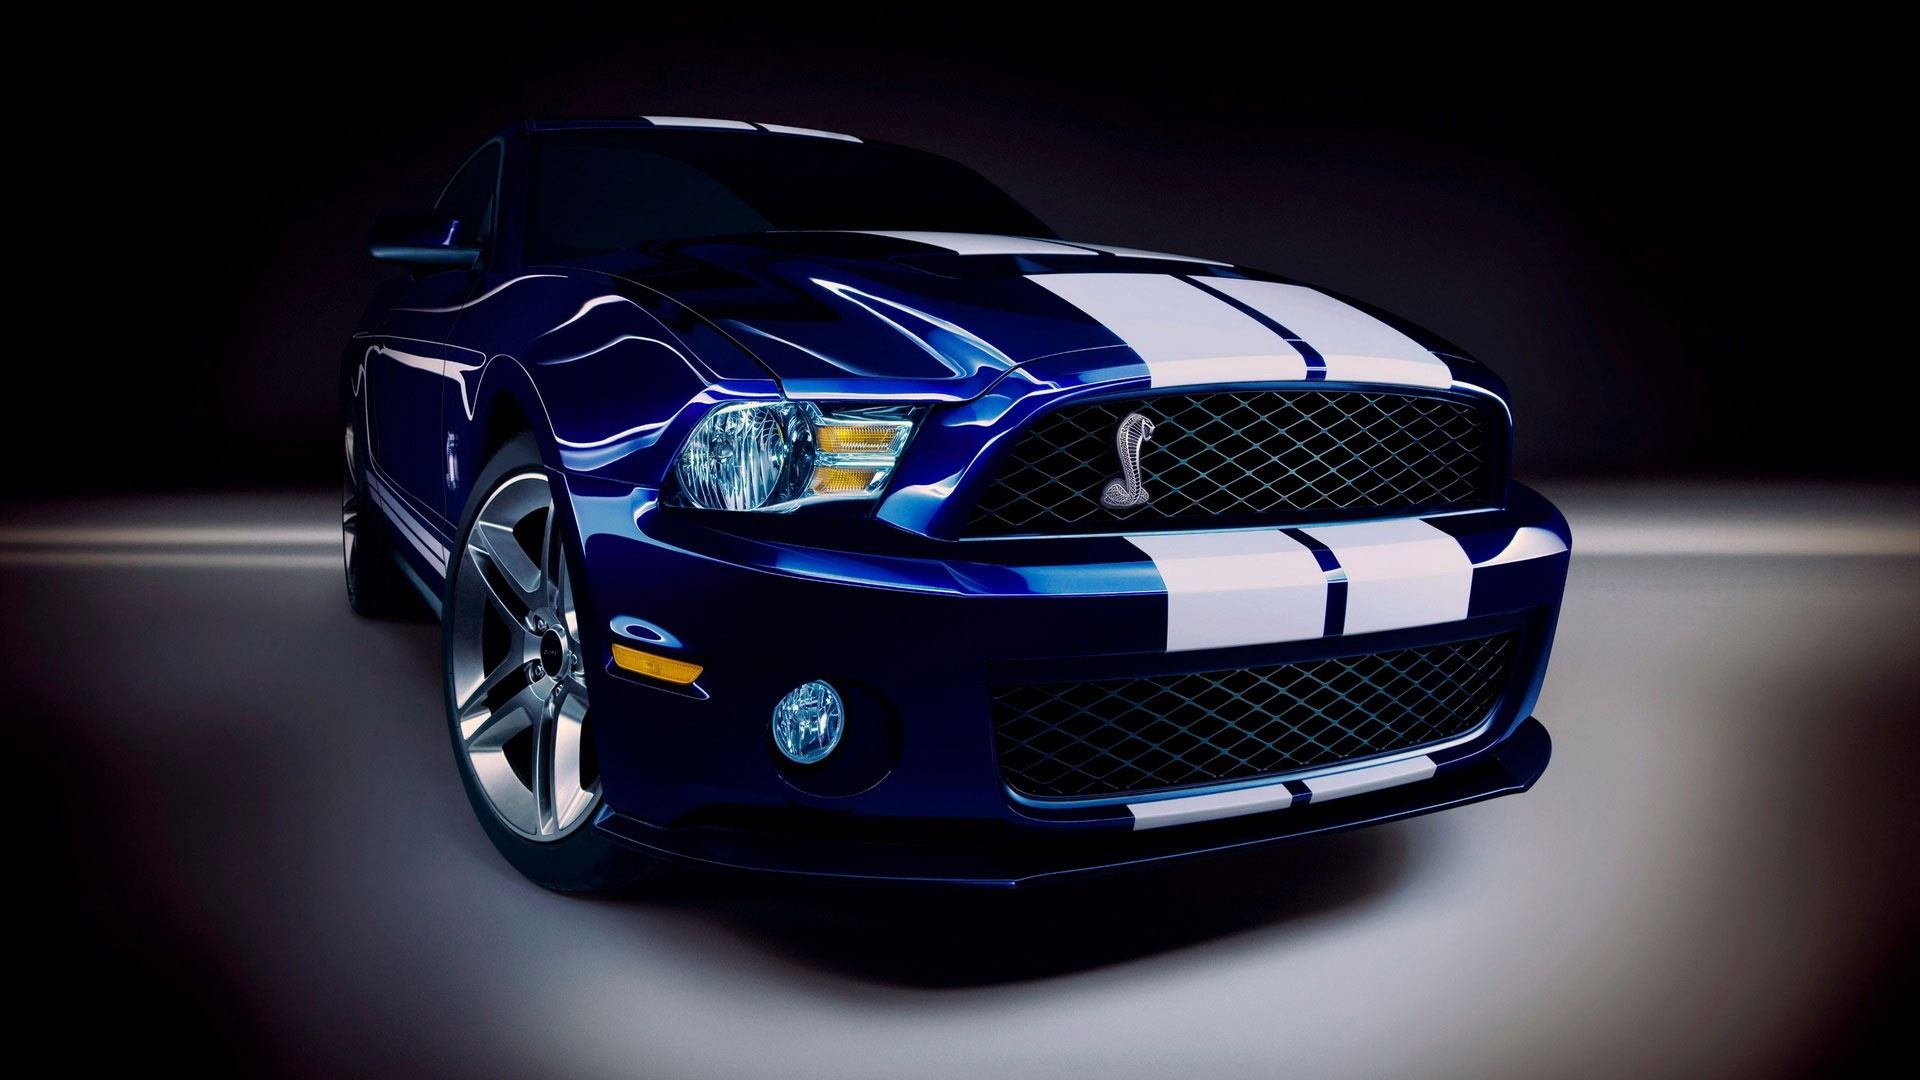  Ford Hintergrundbild 1920x1080. Vorderansicht des blauen Autos von Ford Mustang, Scheinwerfer 1920x1080 Full HD 2K Hintergrundbilder, HD, Bild